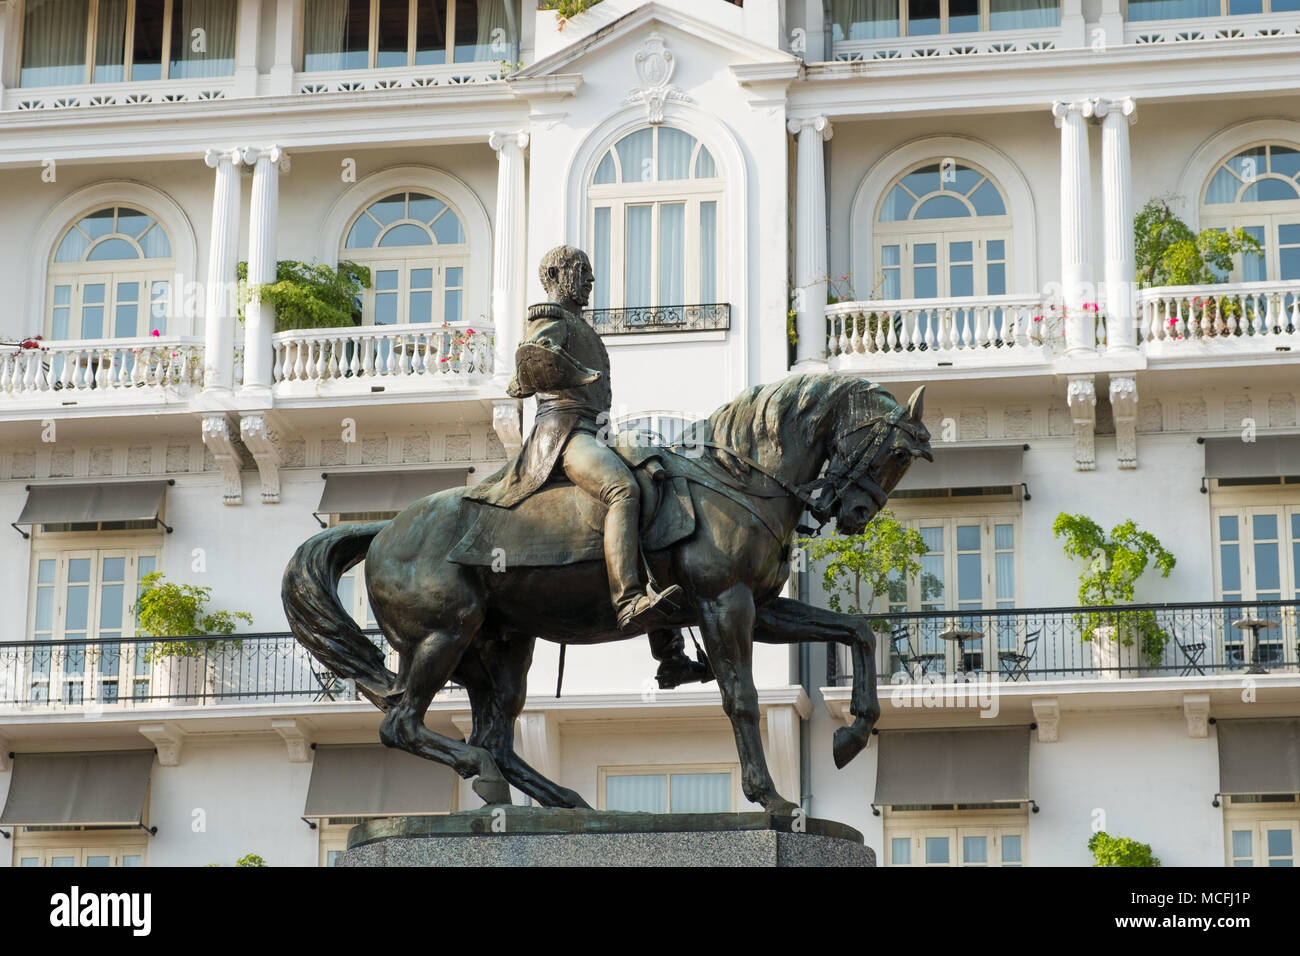 La ville de Panama, Panama - mars 2018 : Statue du général Tomas Herrera, un héros national de l'Panameniam l'indépendance de l'Espagne dans la région de Casco Viejo, Panama City Banque D'Images